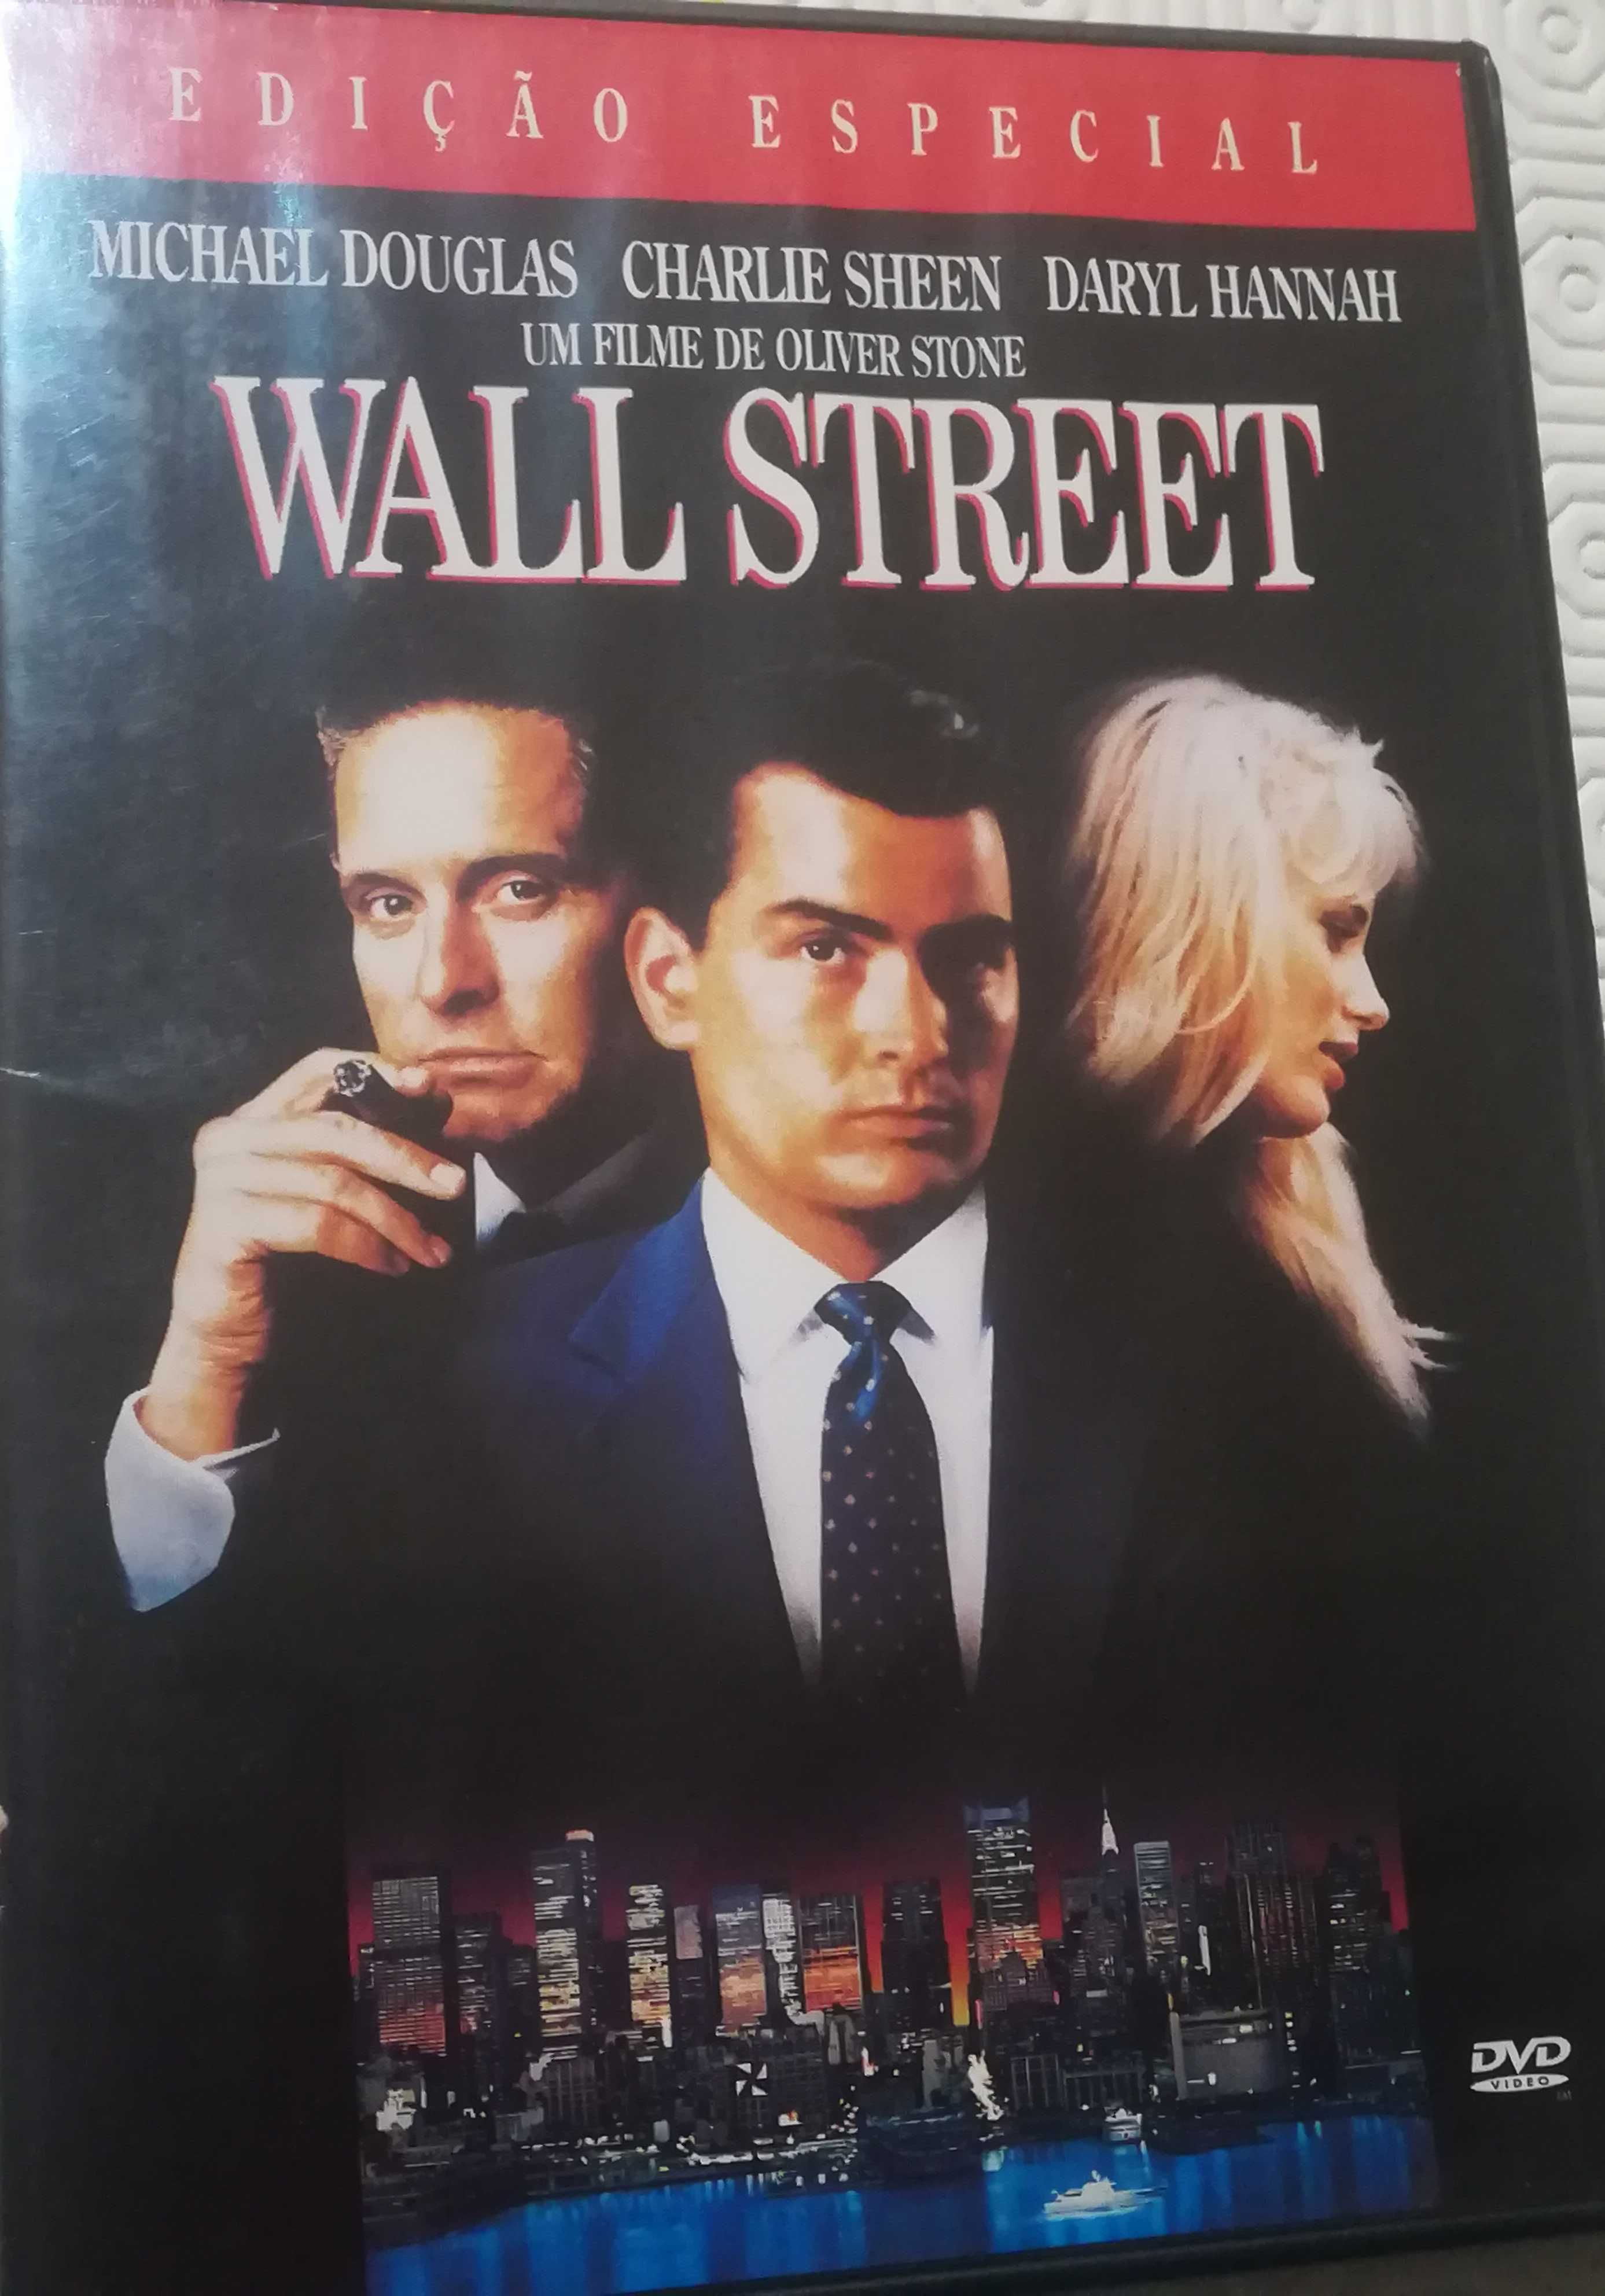 Portes grátis Wall Street com Michael Douglas e Charlie Sheen